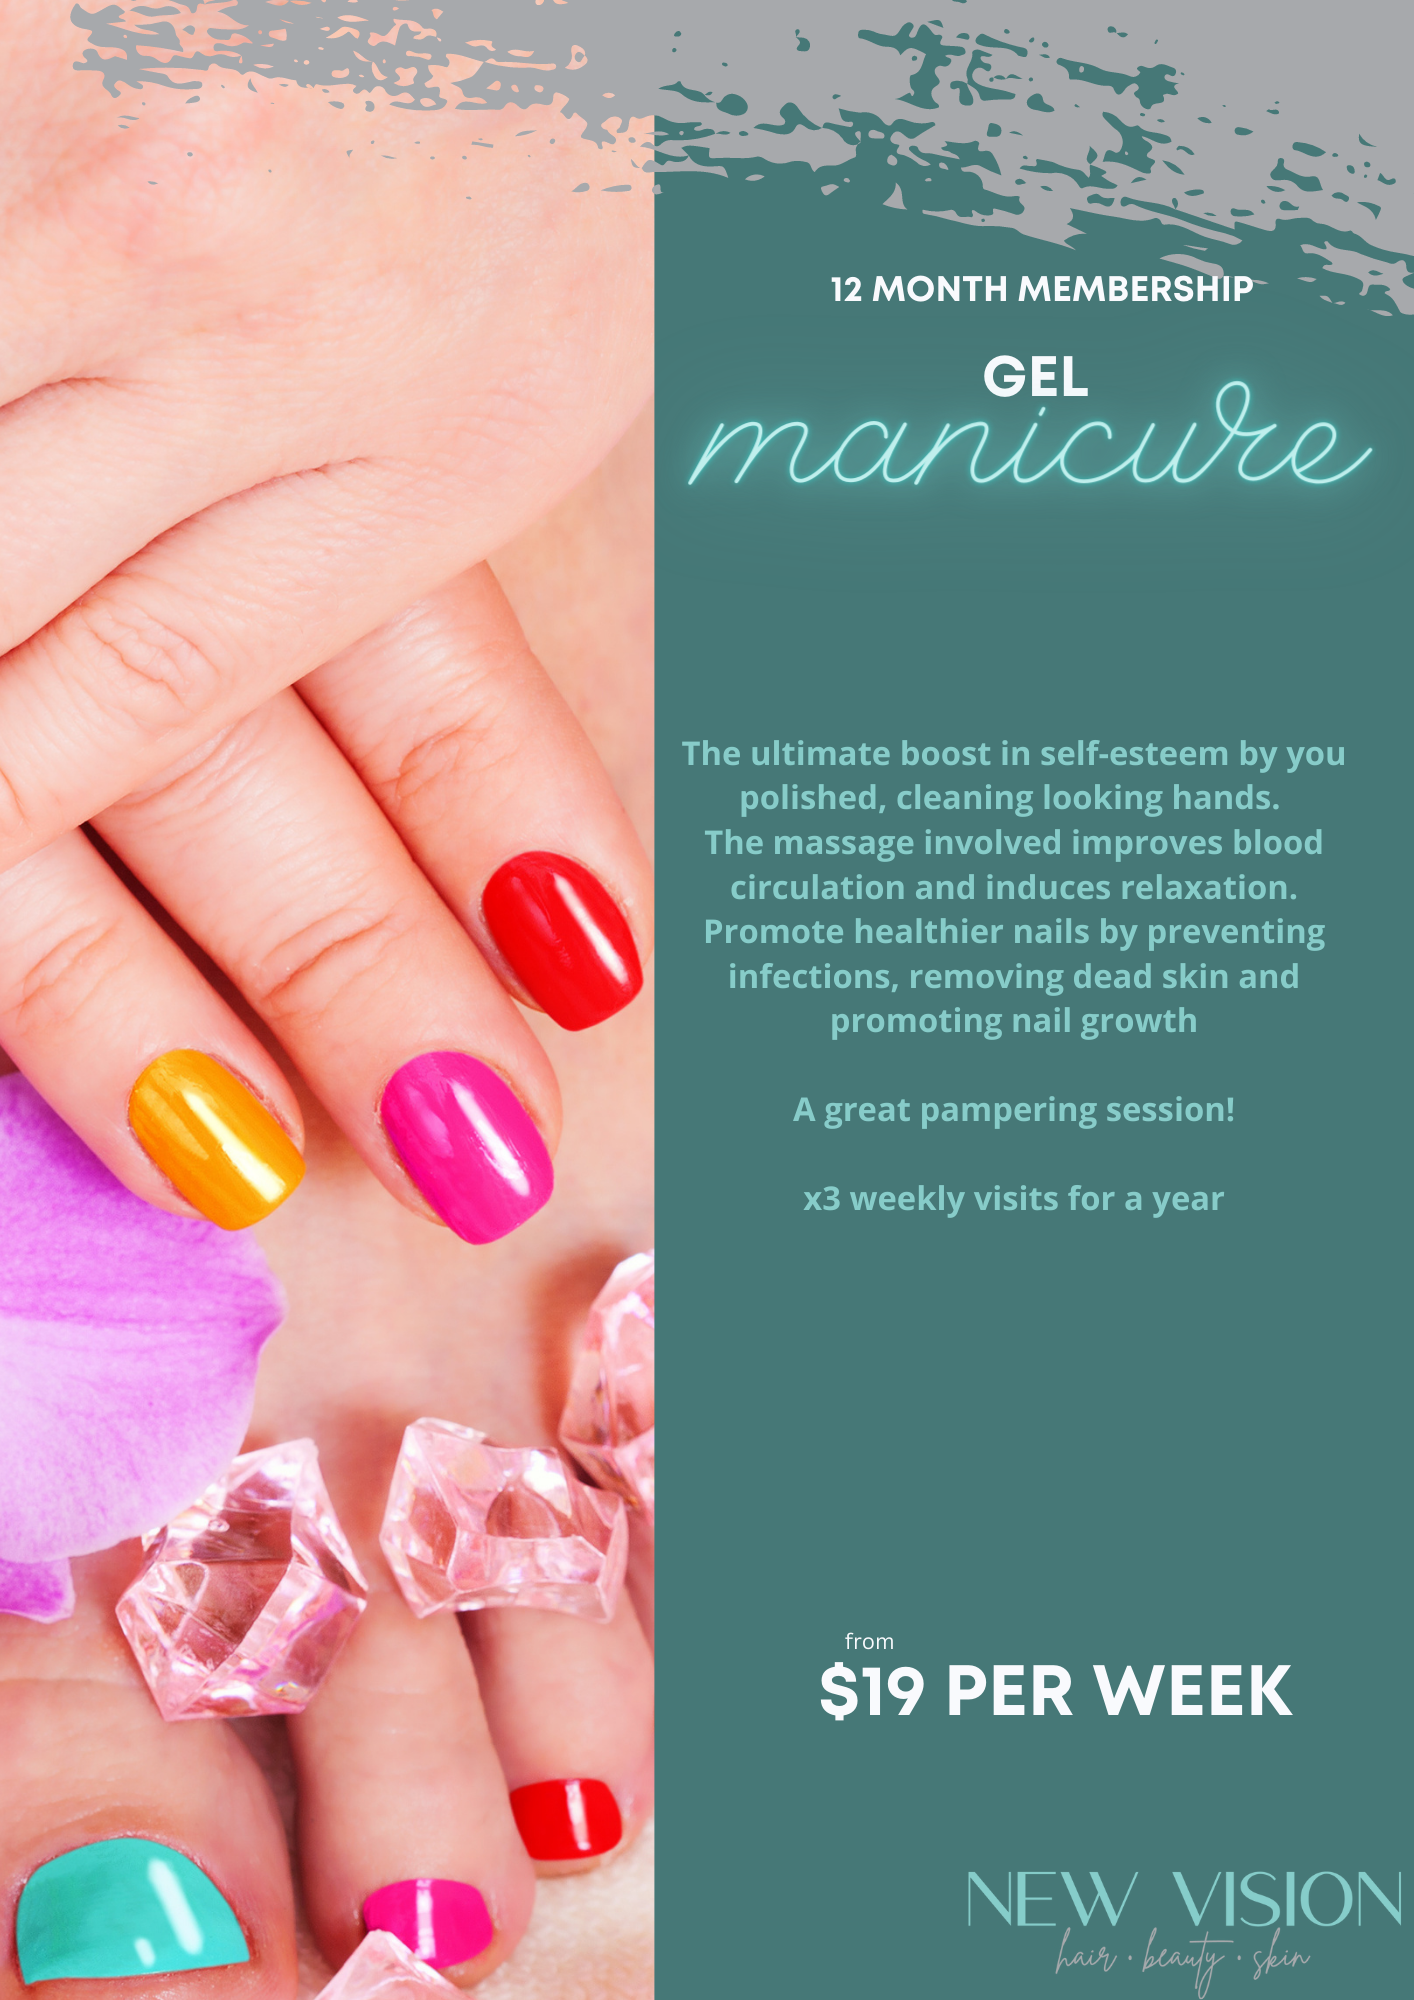 Image: Gel Manicure Membership from $19 per week